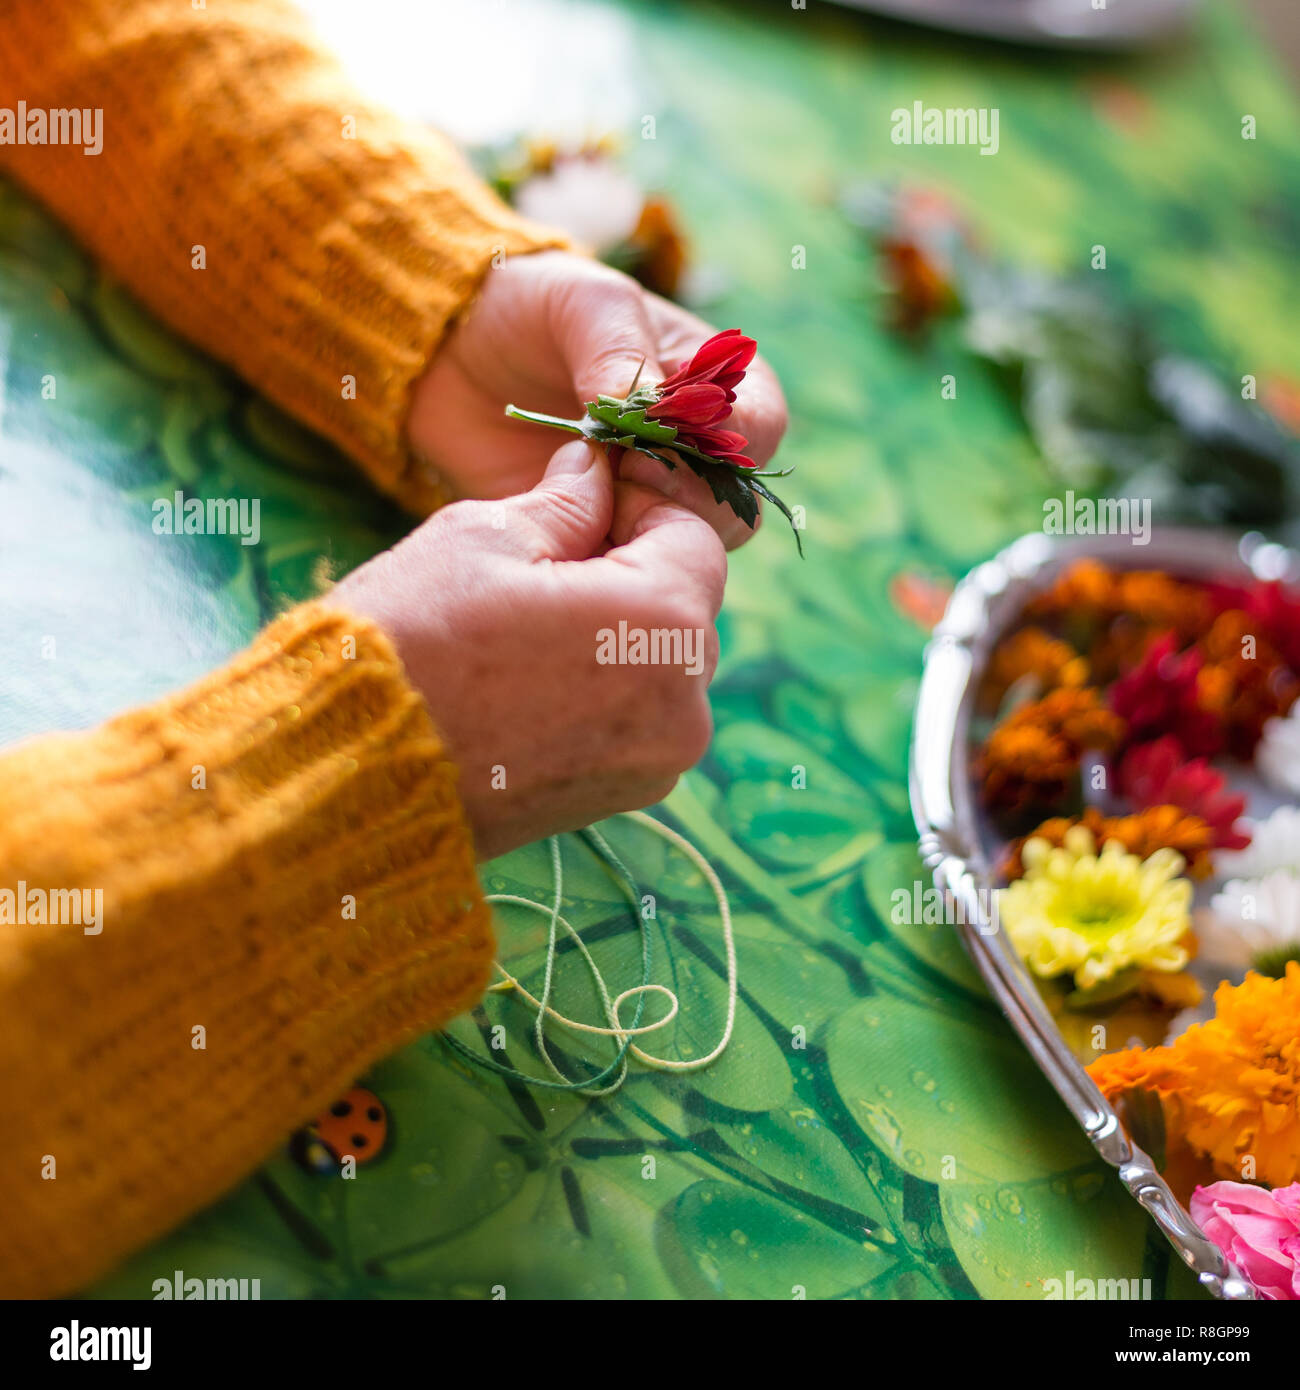 Le mani di un giovane devoto che costruire una collana di fiori da offrire  ai loro Gurur. Tra i fiori vi sono foglie verdi come la bellezza Foto stock  - Alamy